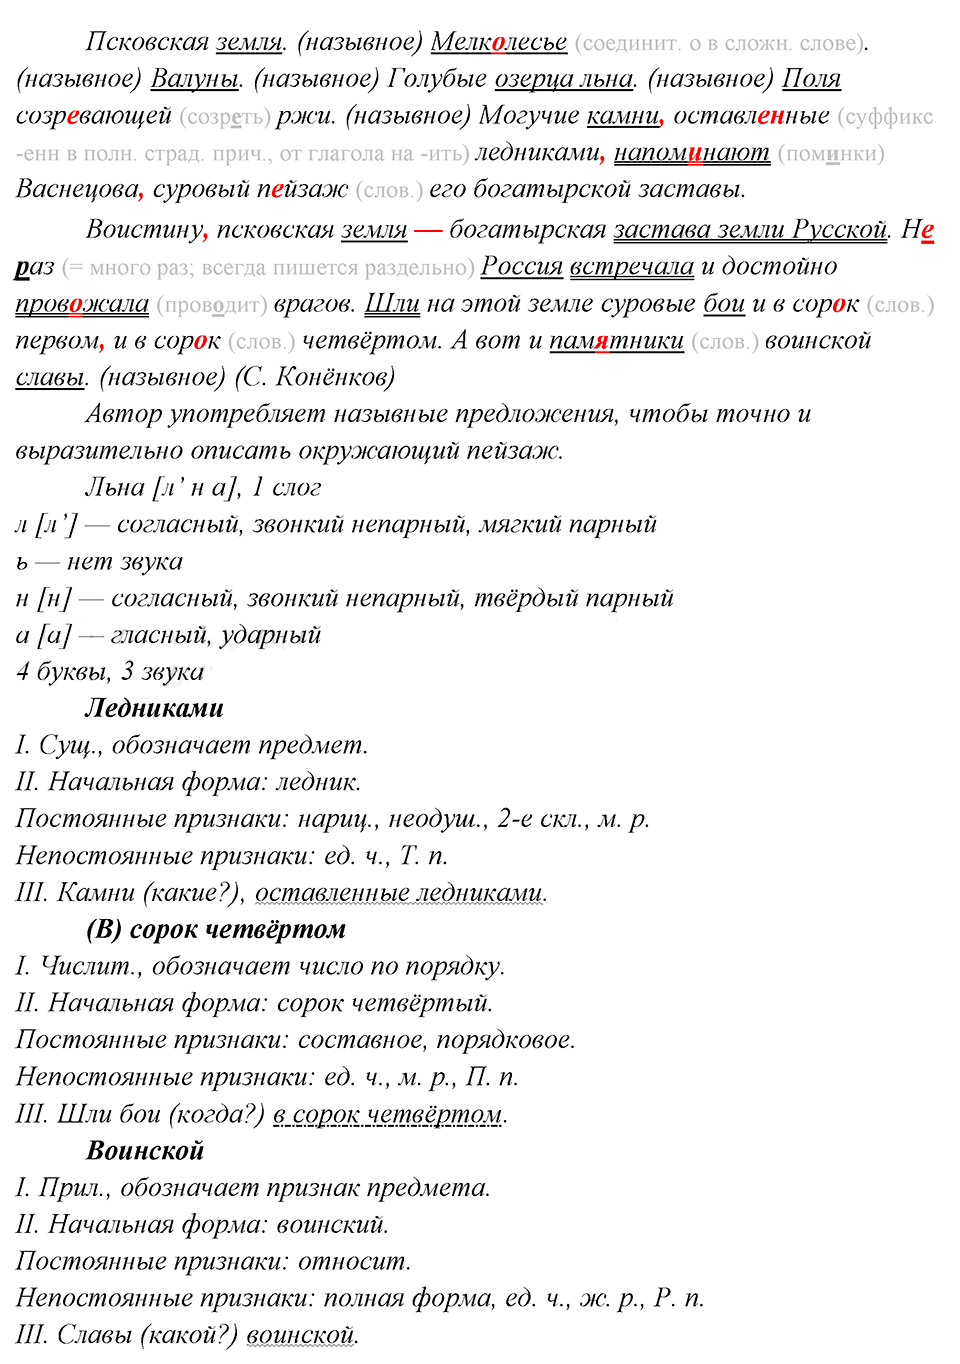 упражнение 282 русский язык 8 класс разбор слов лебниками, в сорок четвертом, воинской